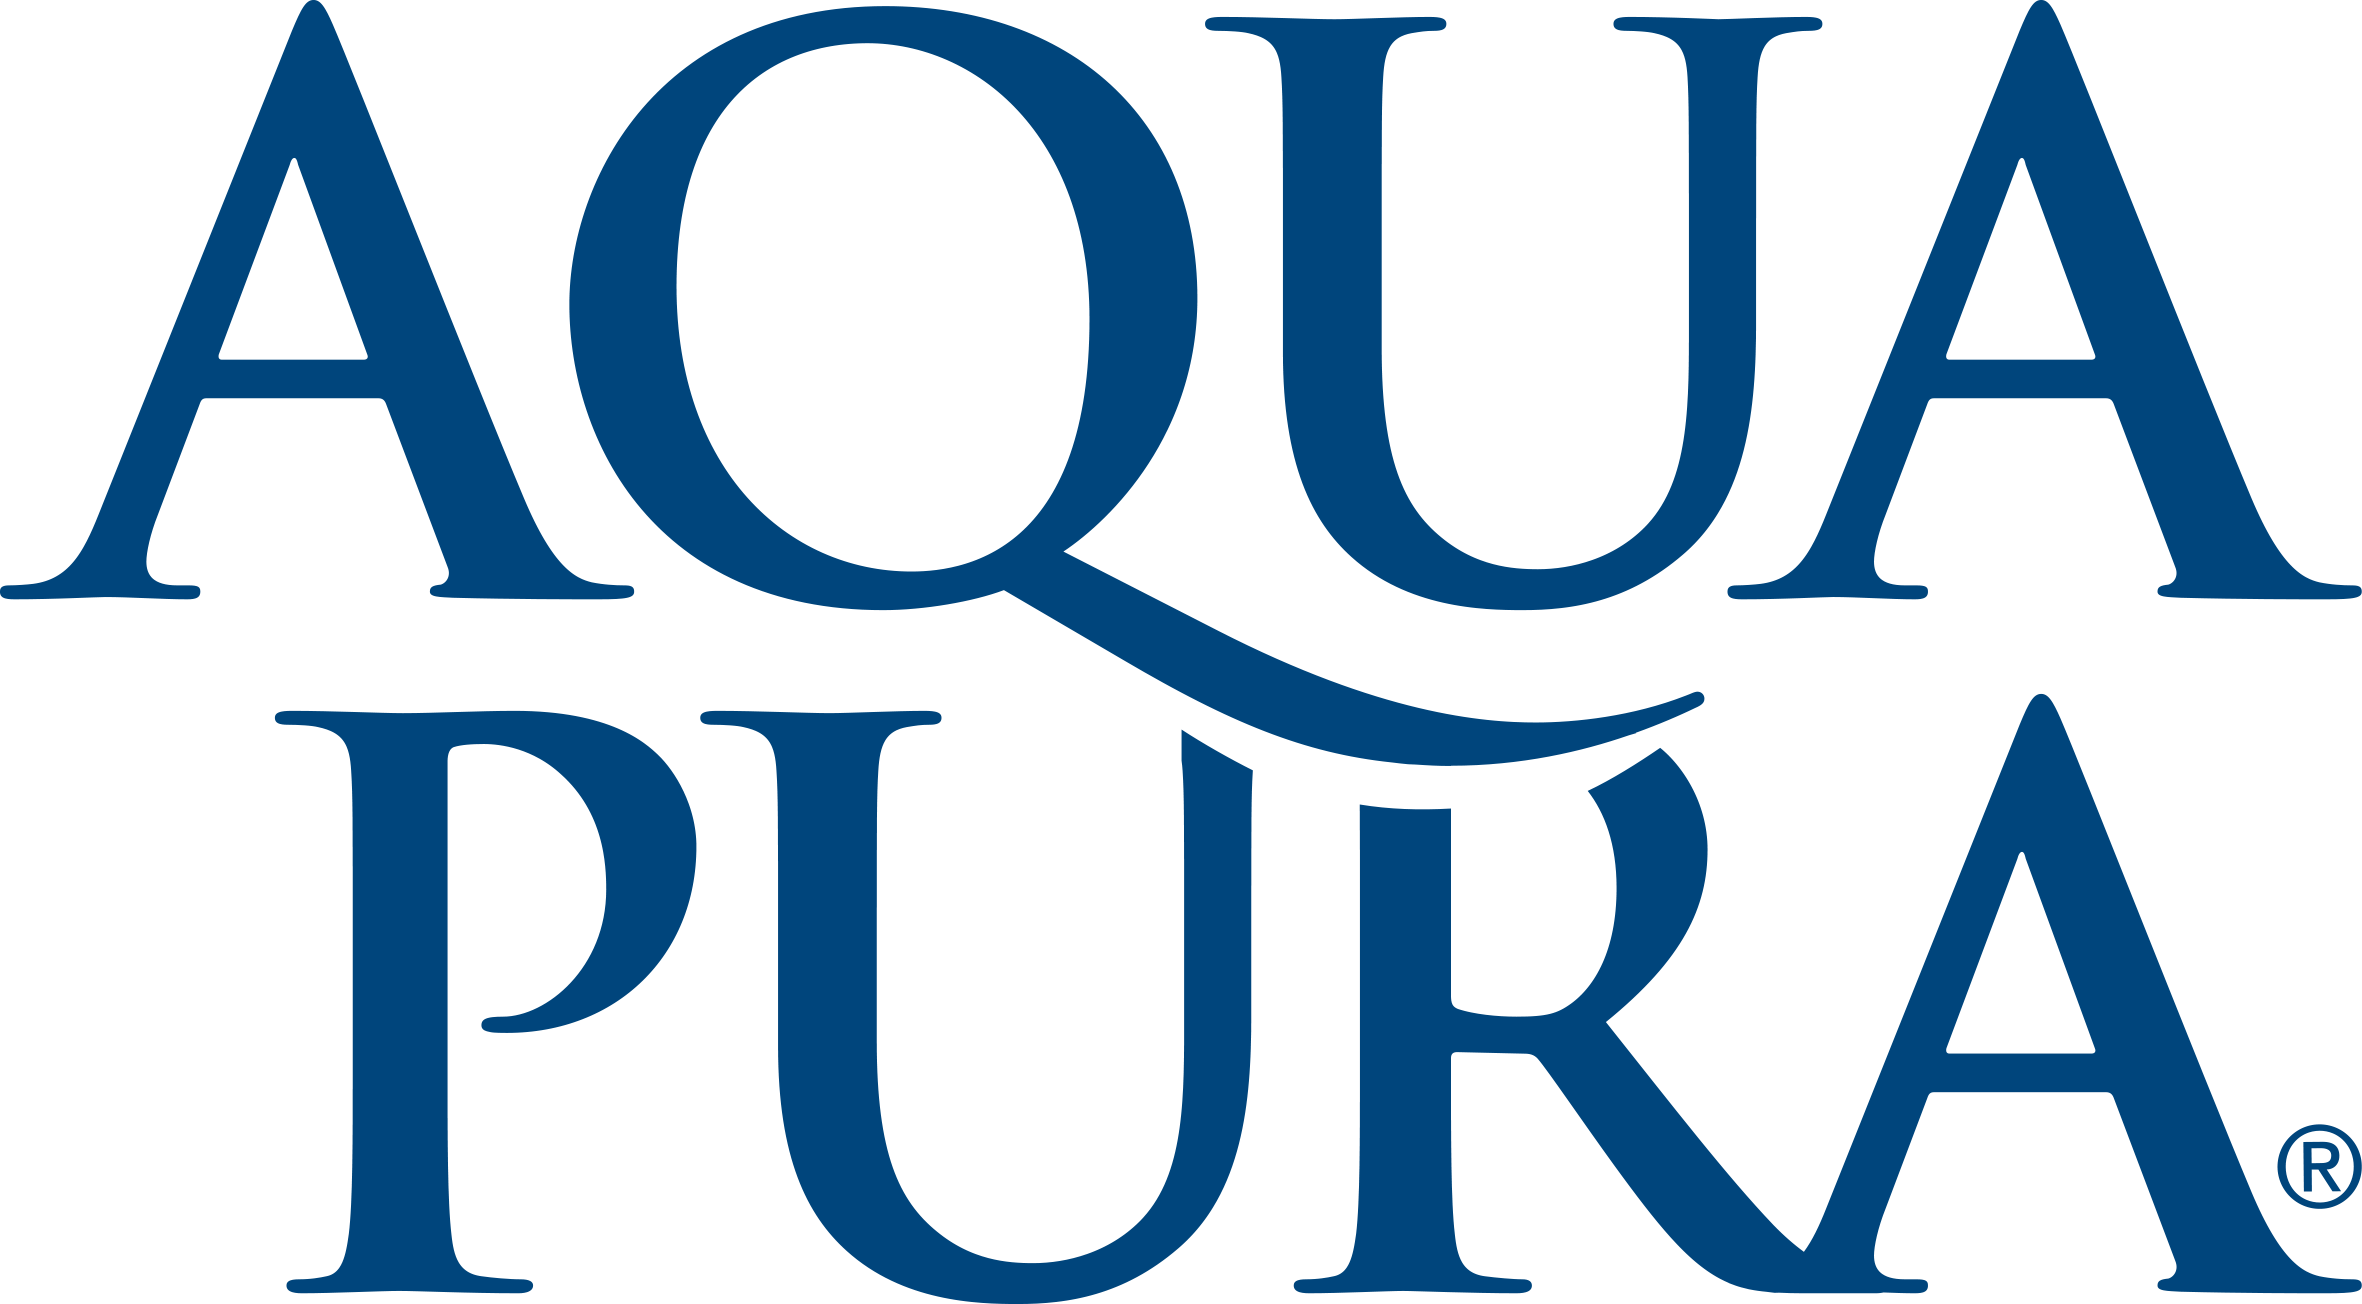 Aqua Pura